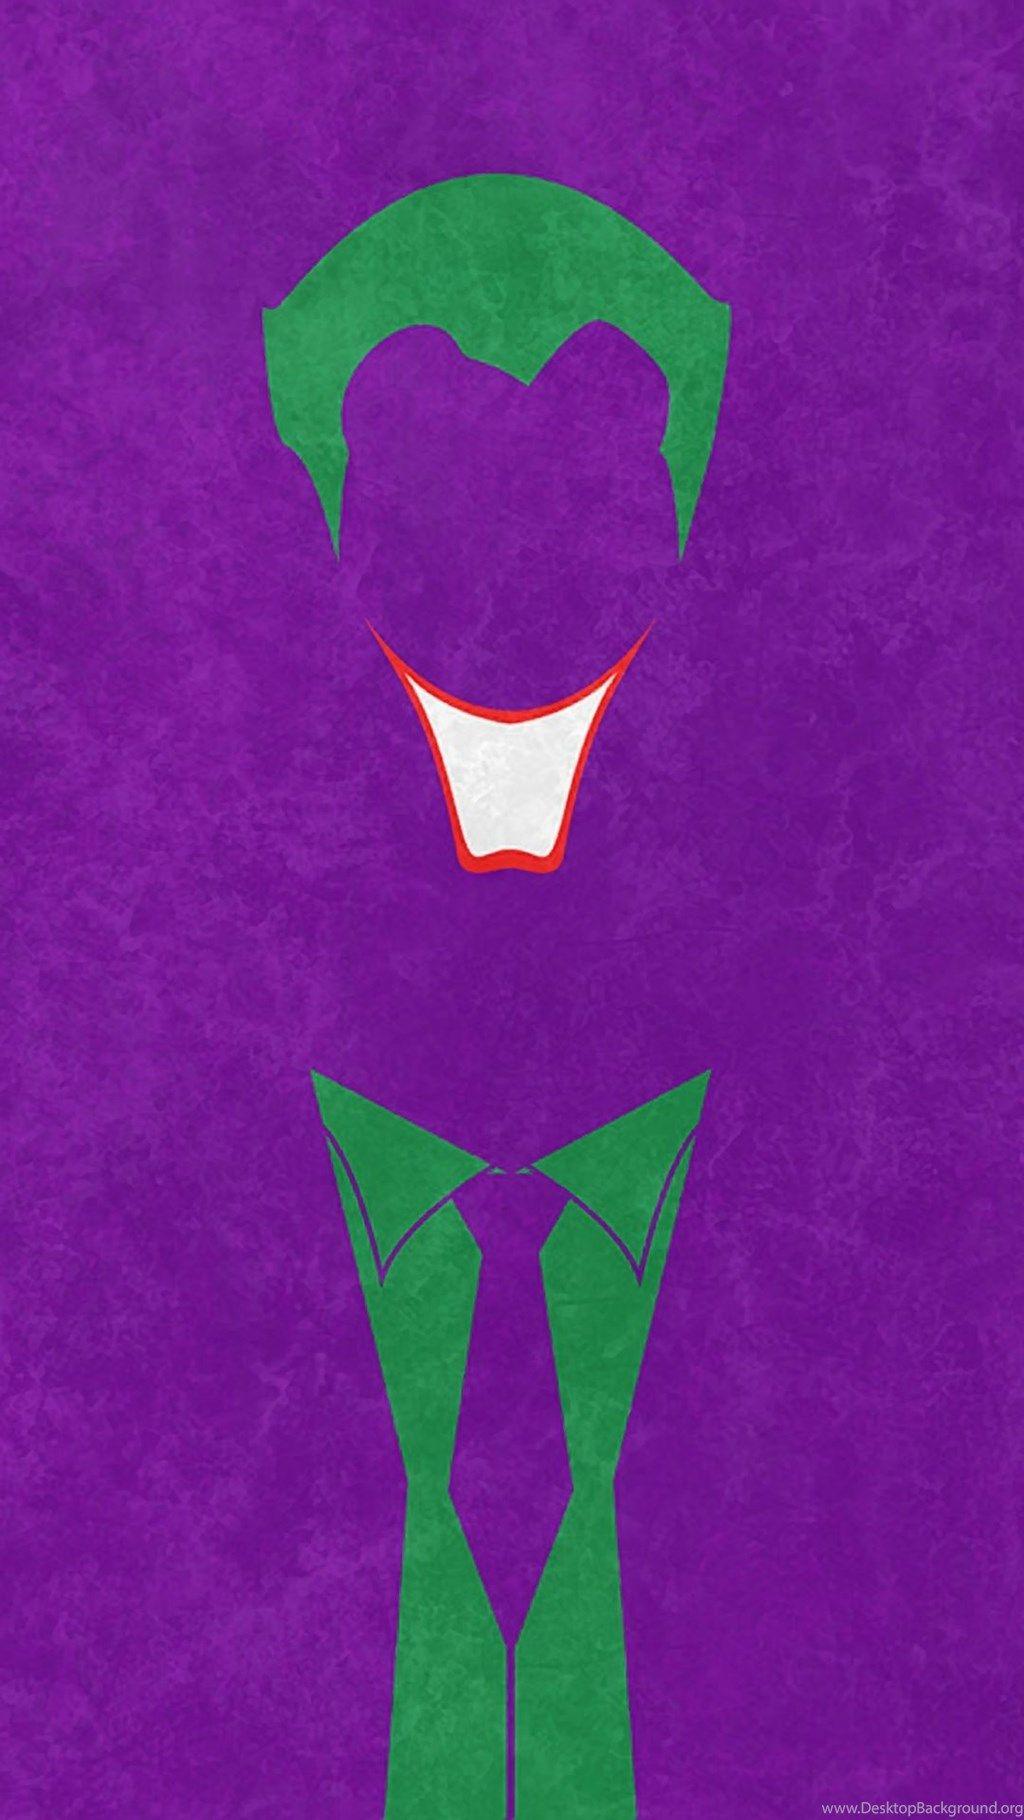 Joker Logo Wallpaper Free Joker Logo Background